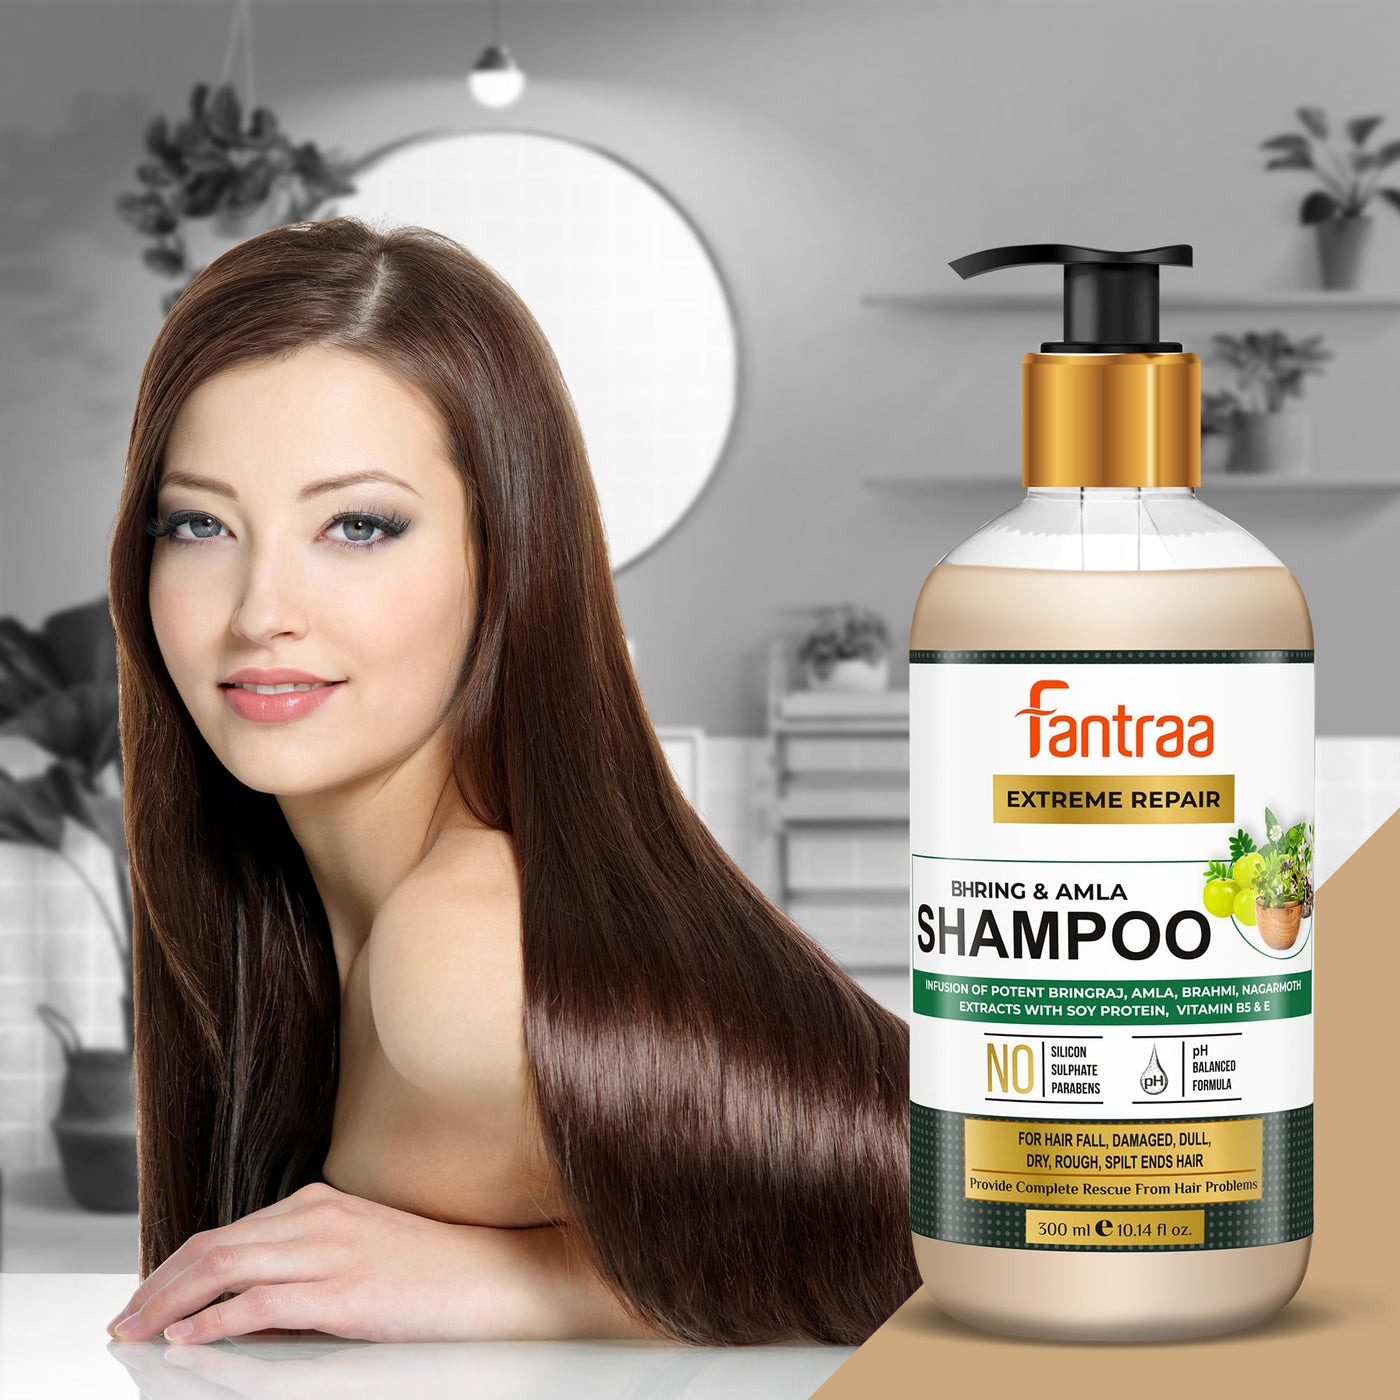 Bhringraj & Amla Shampoo for Hair Fall, Damaged, Dull, Dry, Rough, Spiltends Hair with Brahmi, Nagarmoth Extract 300 ml